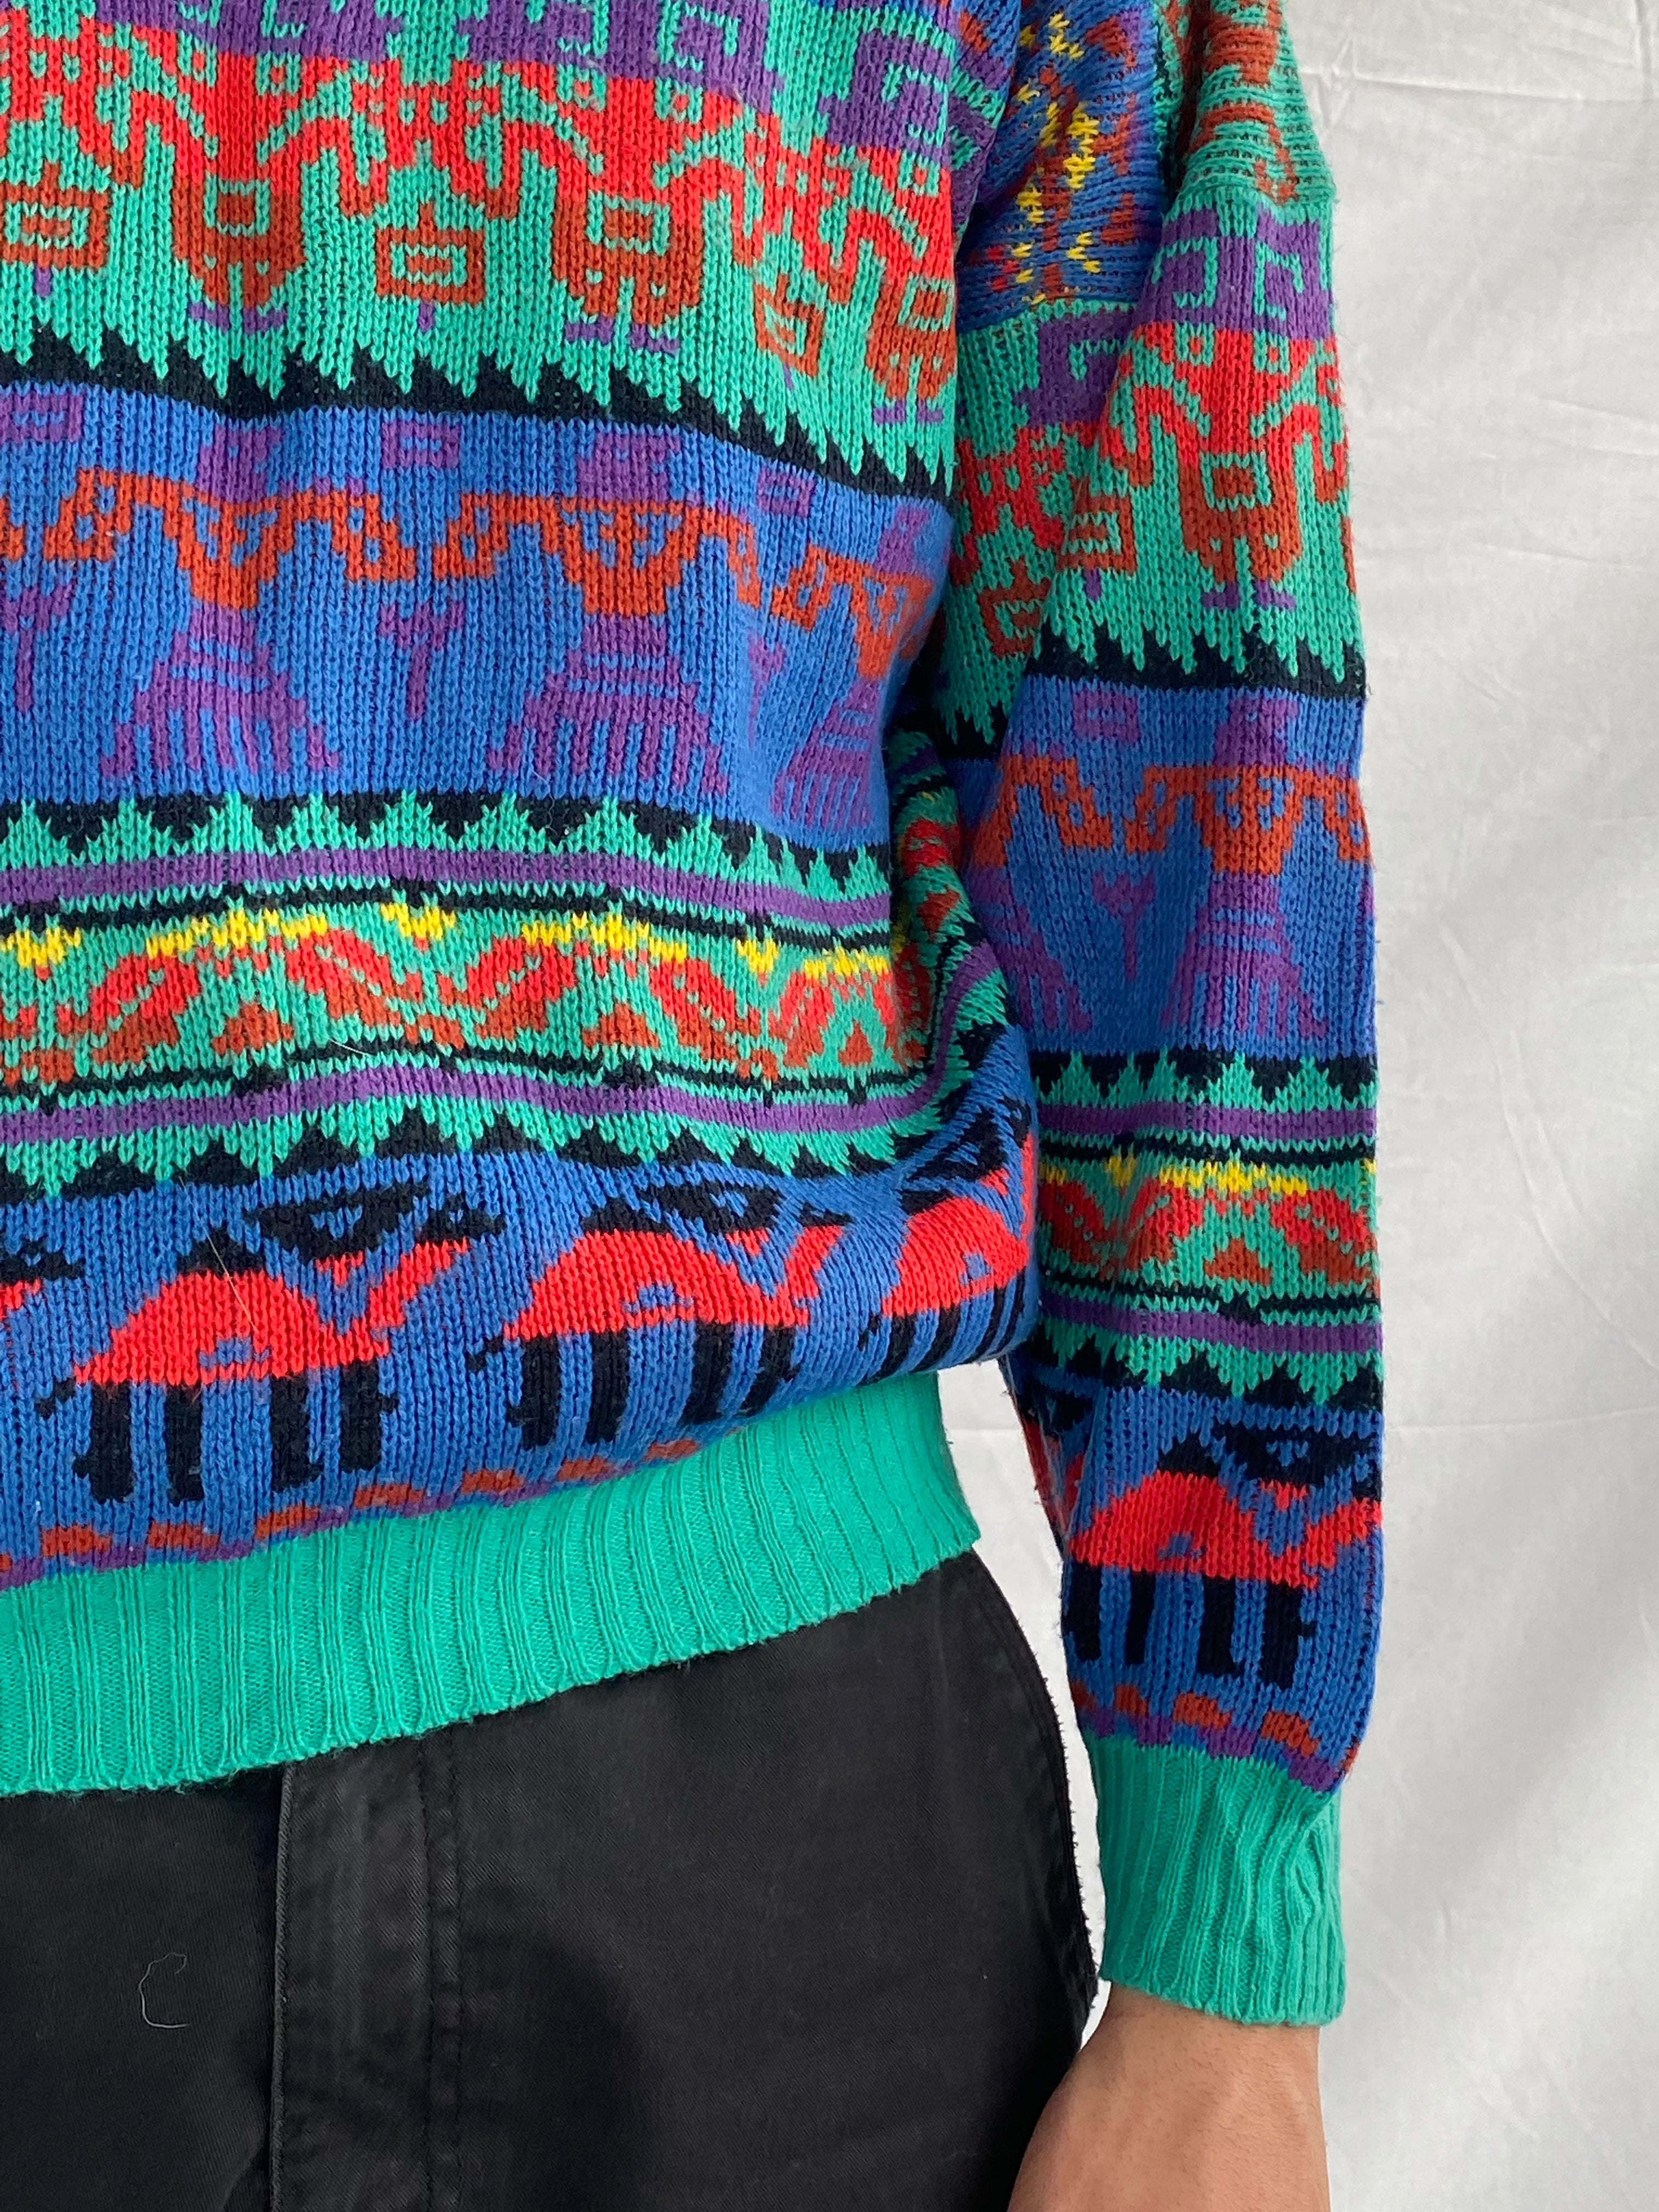 Vintage Knitted Sweater - Balagan Vintage Sweater 90s, knitted, knitted sweater, men, outerwear